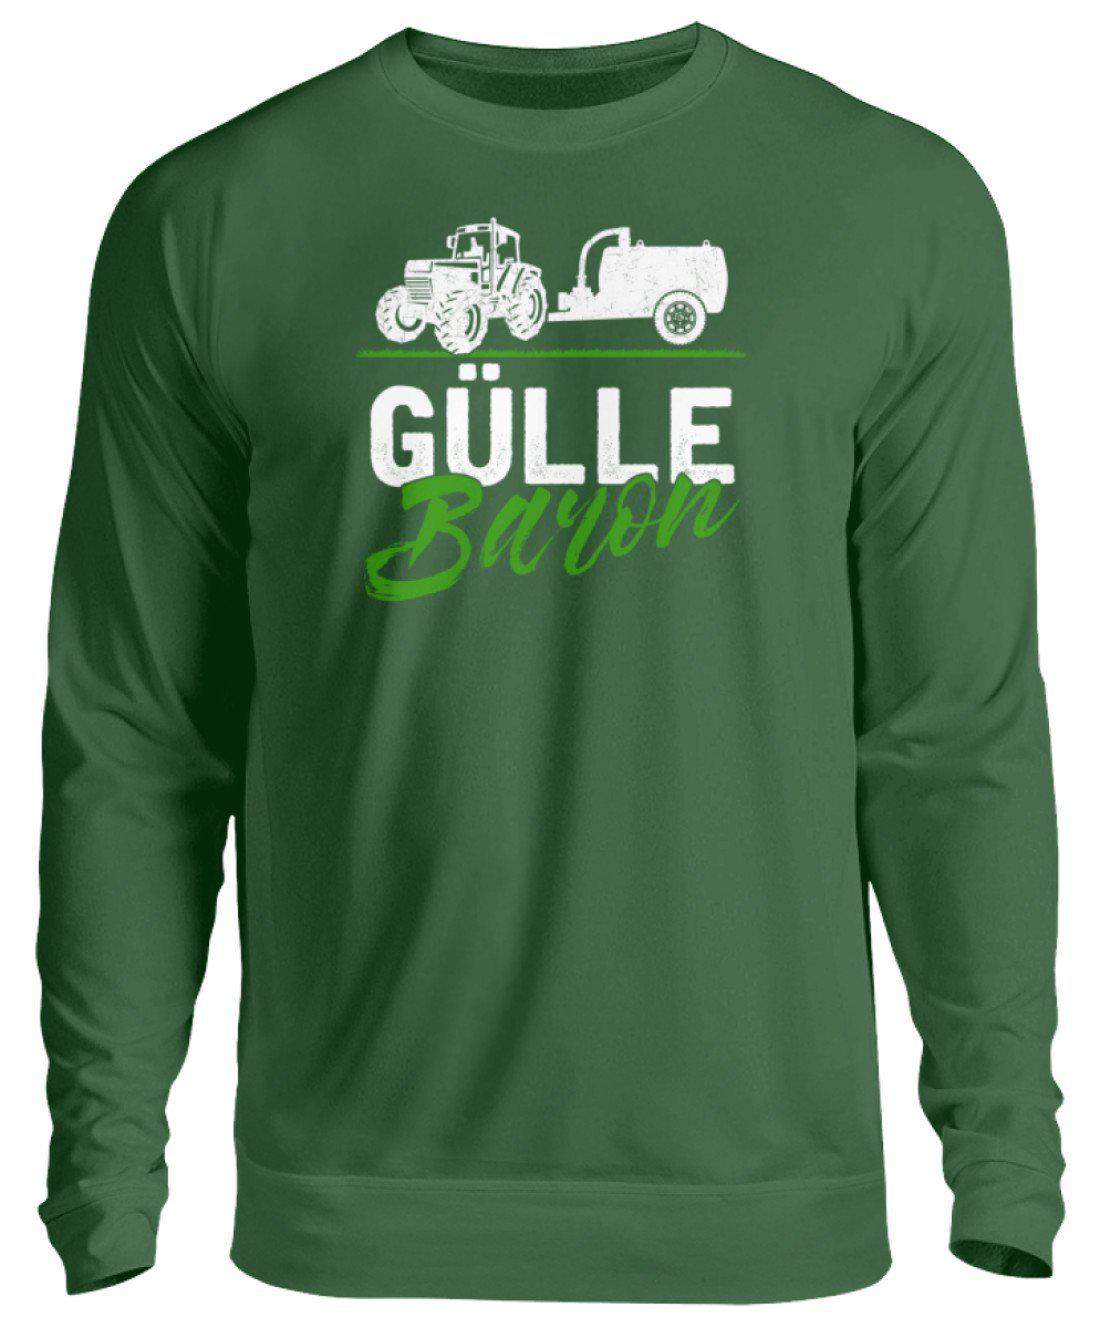 Gülle Baron 2 · Unisex Sweatshirt Pullover-Unisex Sweatshirt-Bottle Green-S-Agrarstarz